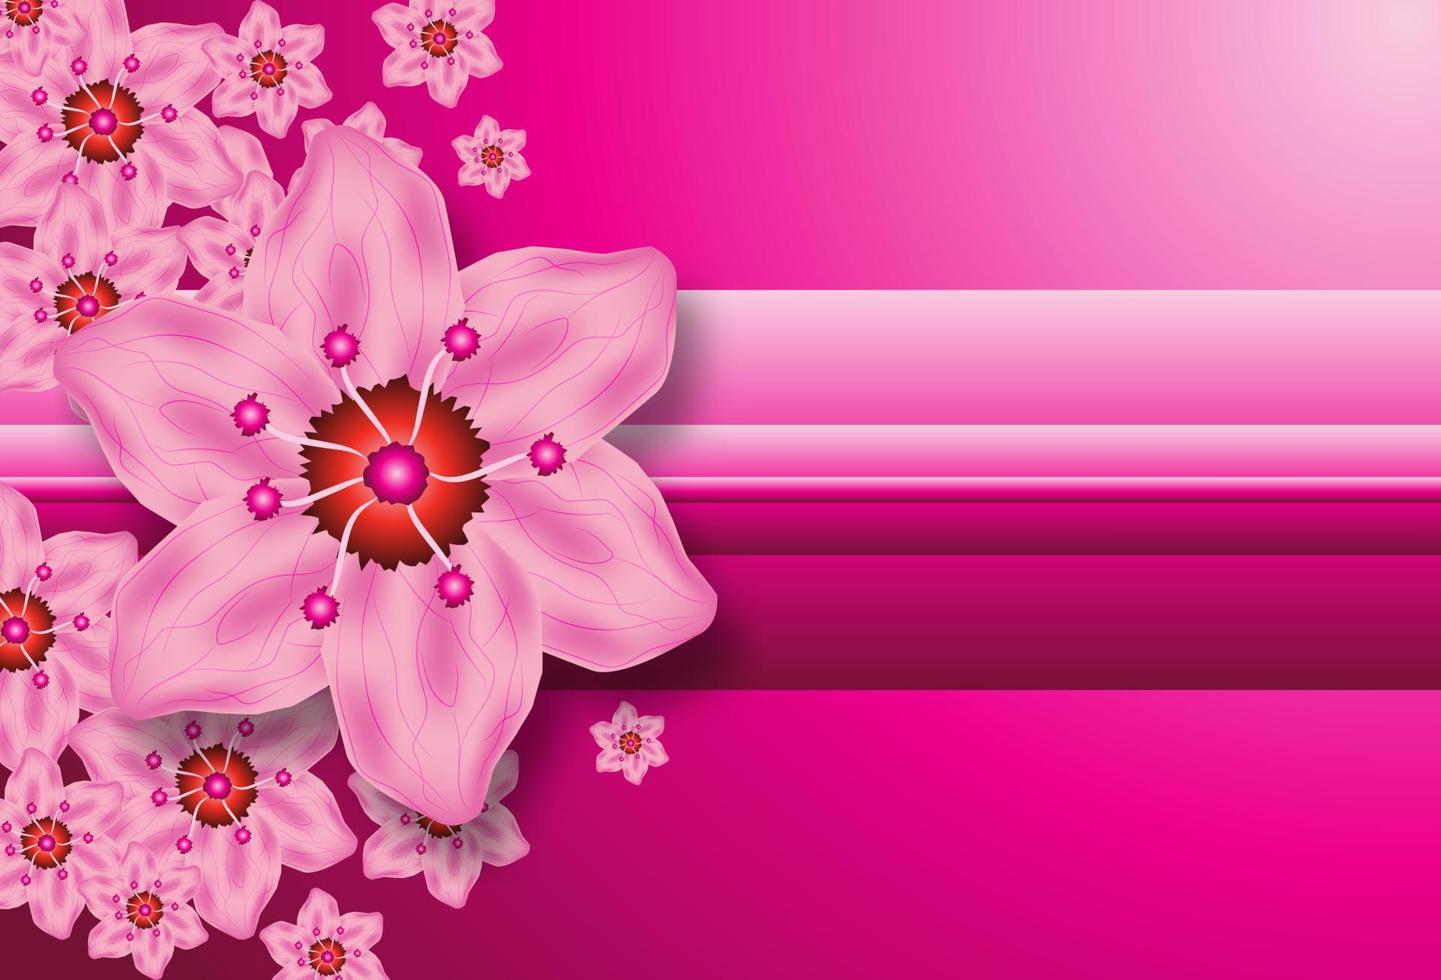 rosa kirschblütenvektorillustration vektor